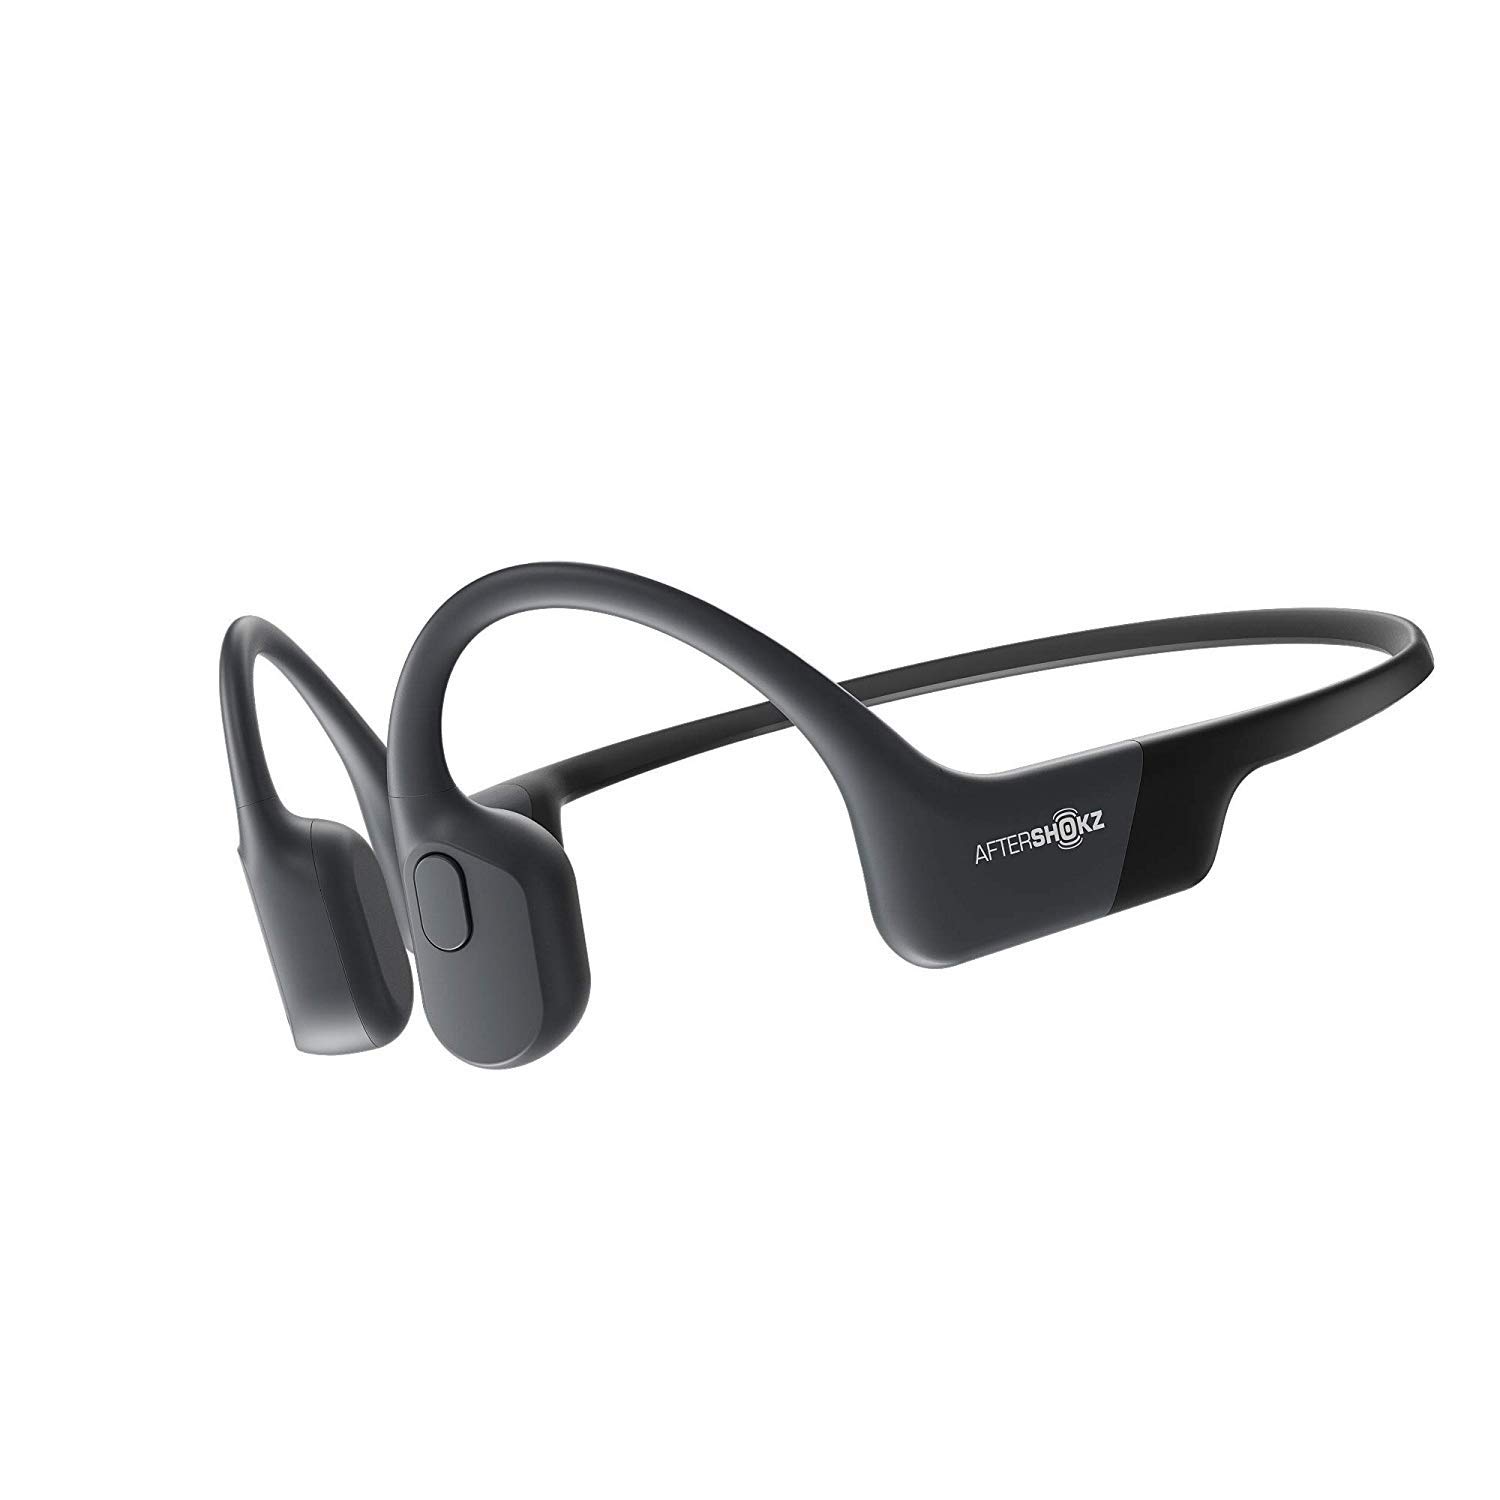 Aftershokz Bezprzewodowe słuchawki Bluetooth Aeropex Mini z przewodnictwem kostnym